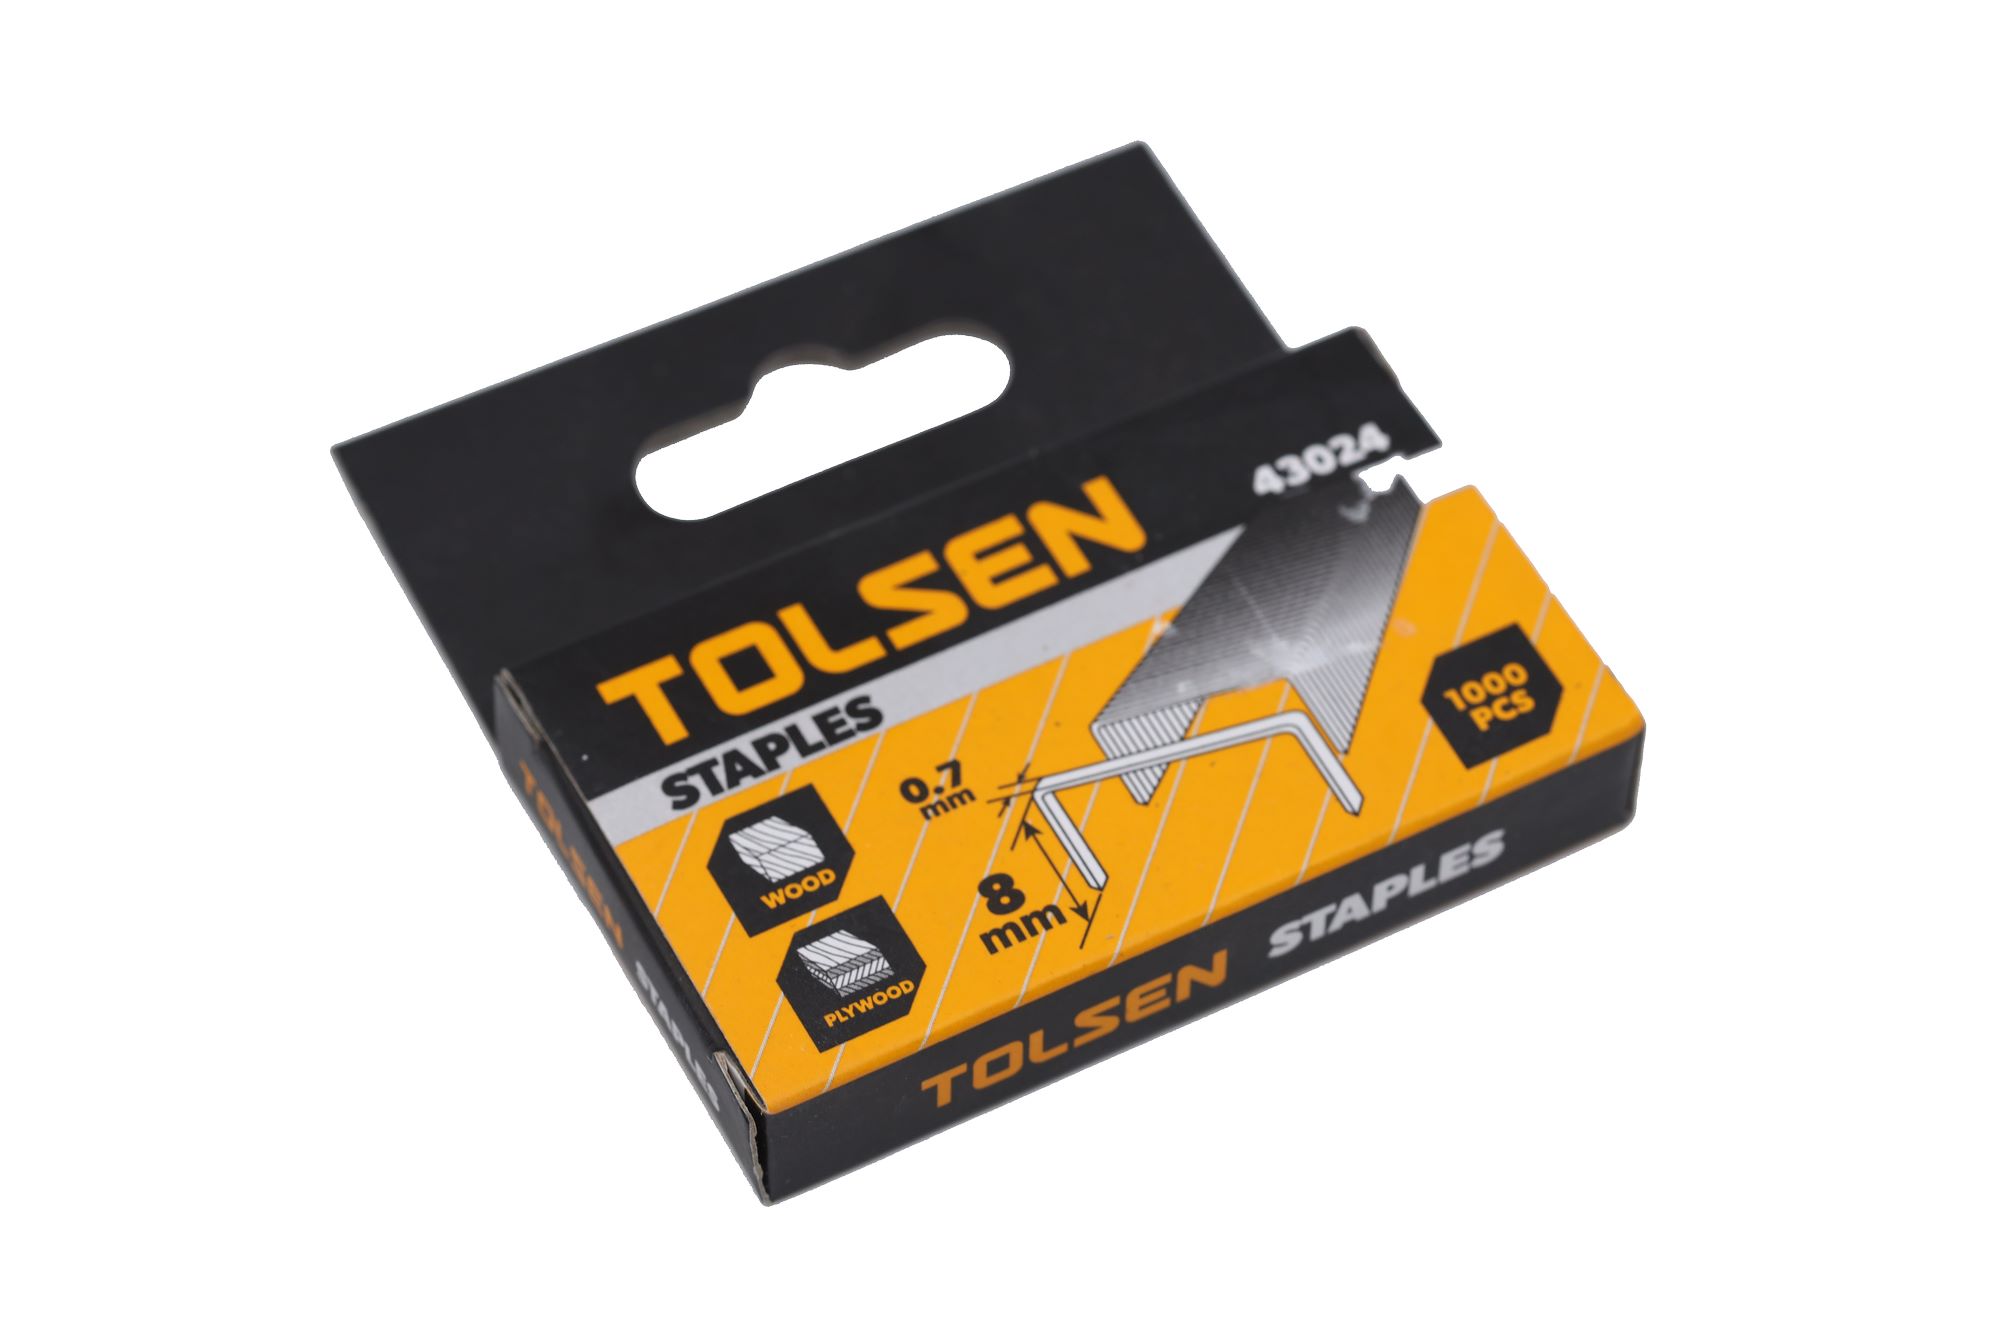 Buy STAPLER PIN 0.7X8MM - TOLSEN Online | Hardware Tools | Qetaat.com